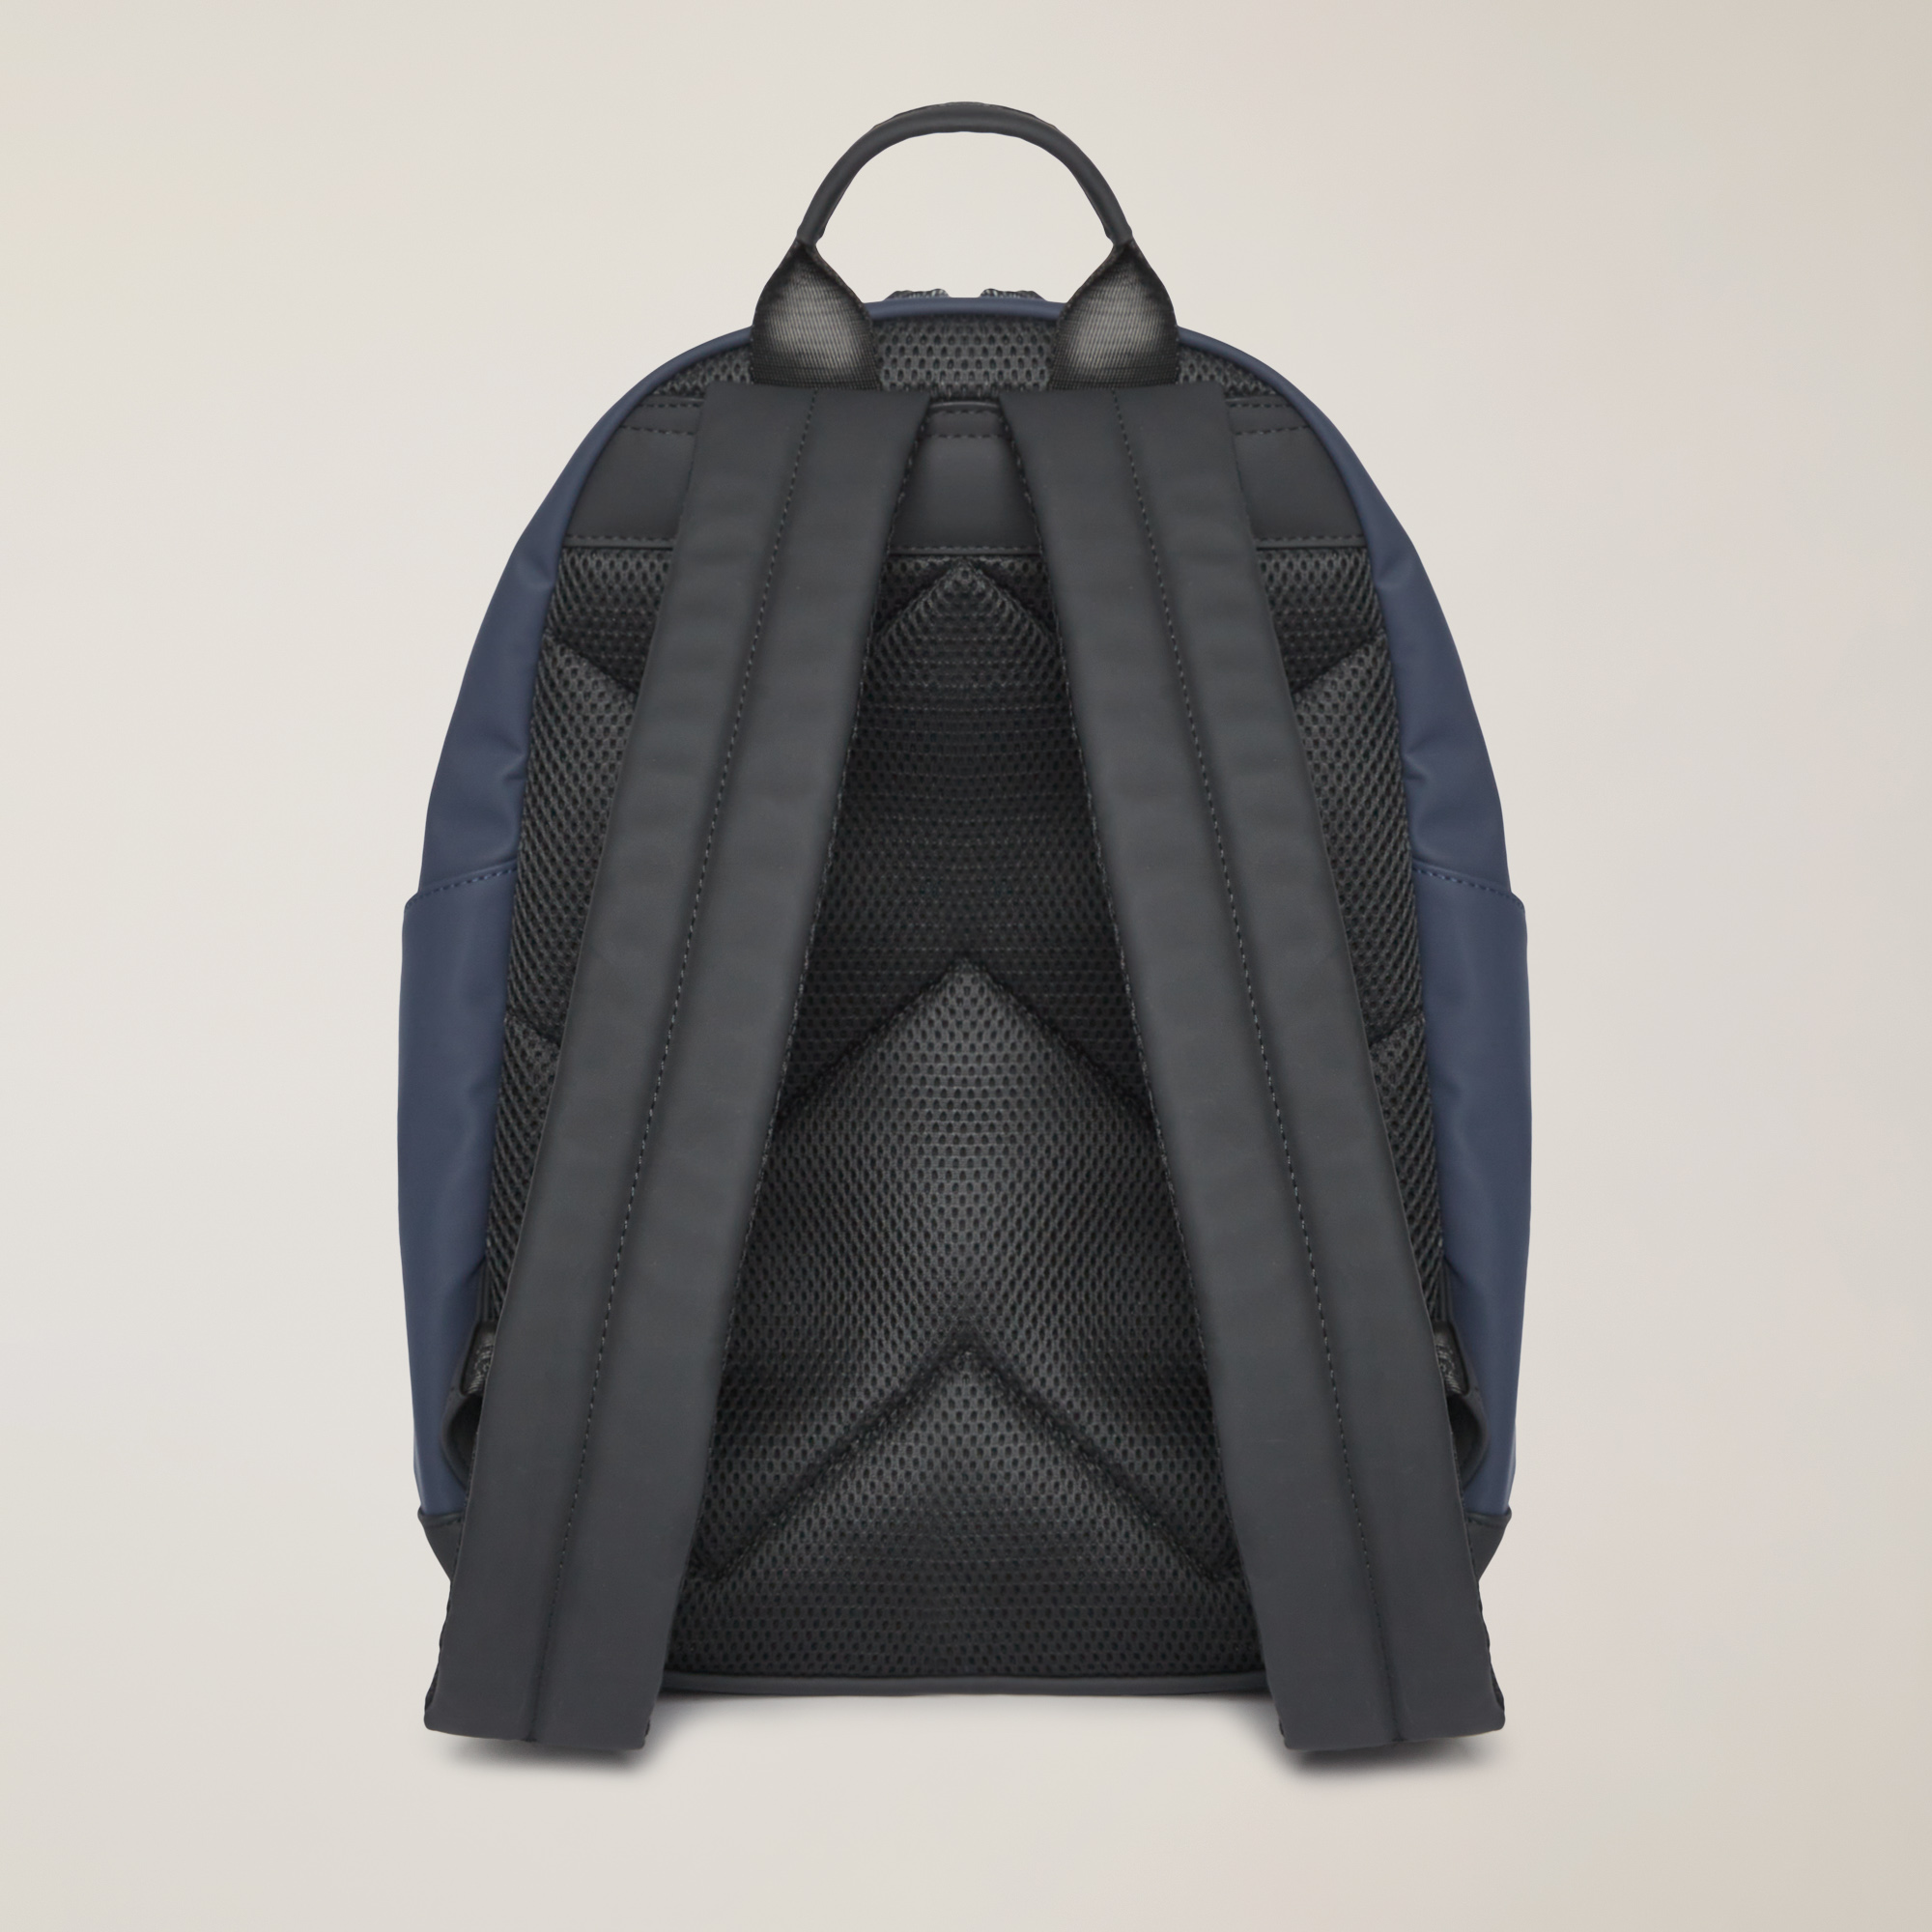 Backpack With Branded Details, Blue, large image number 1